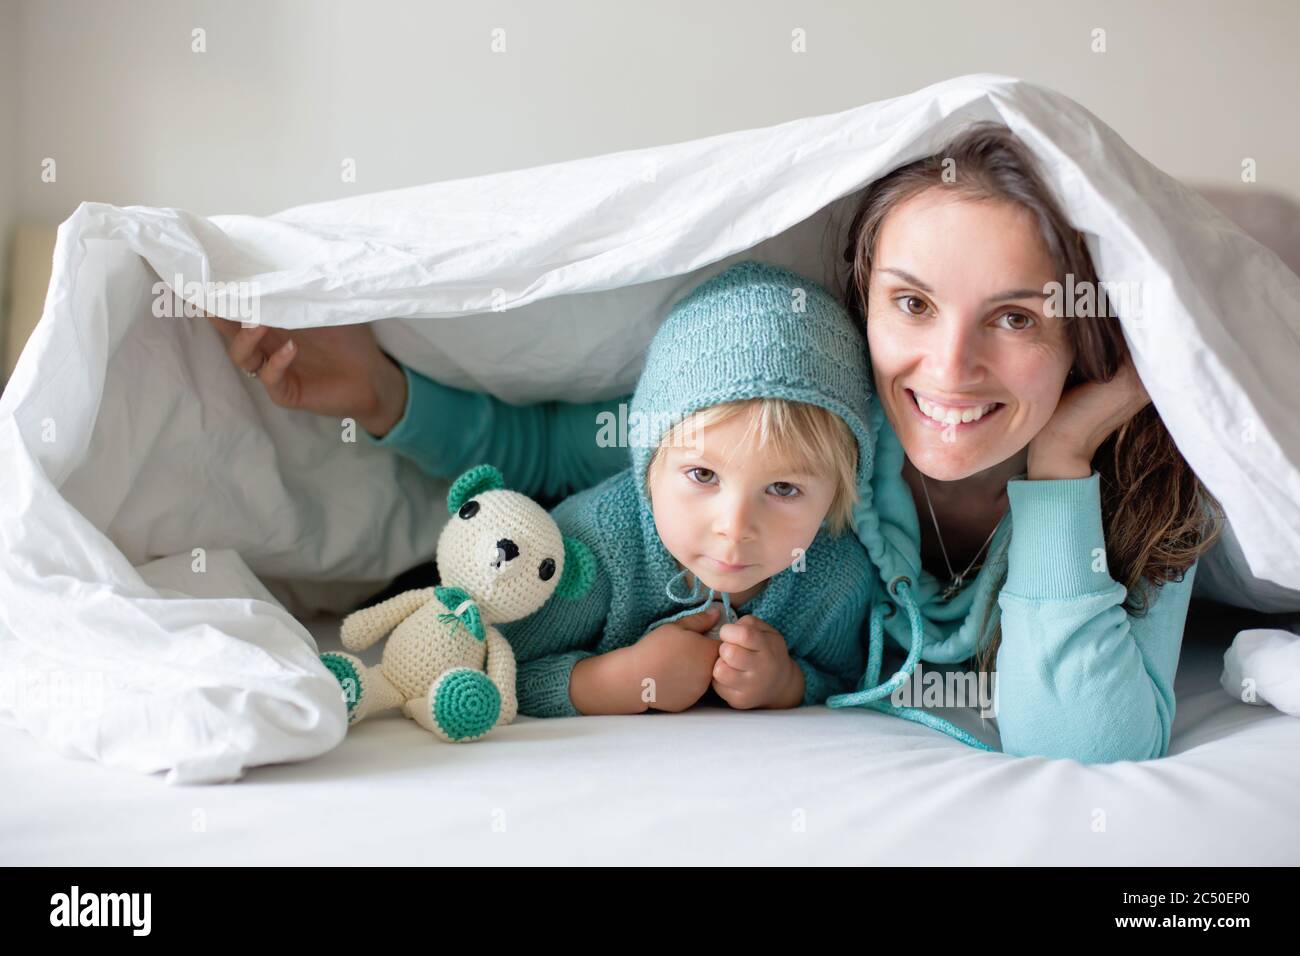 Glückliche Mutter und Kind, Junge, mit passendem Outfit, im Bett liegend, glücklich lächelnd, umarmend und versteckt unter der Decke Stockfoto